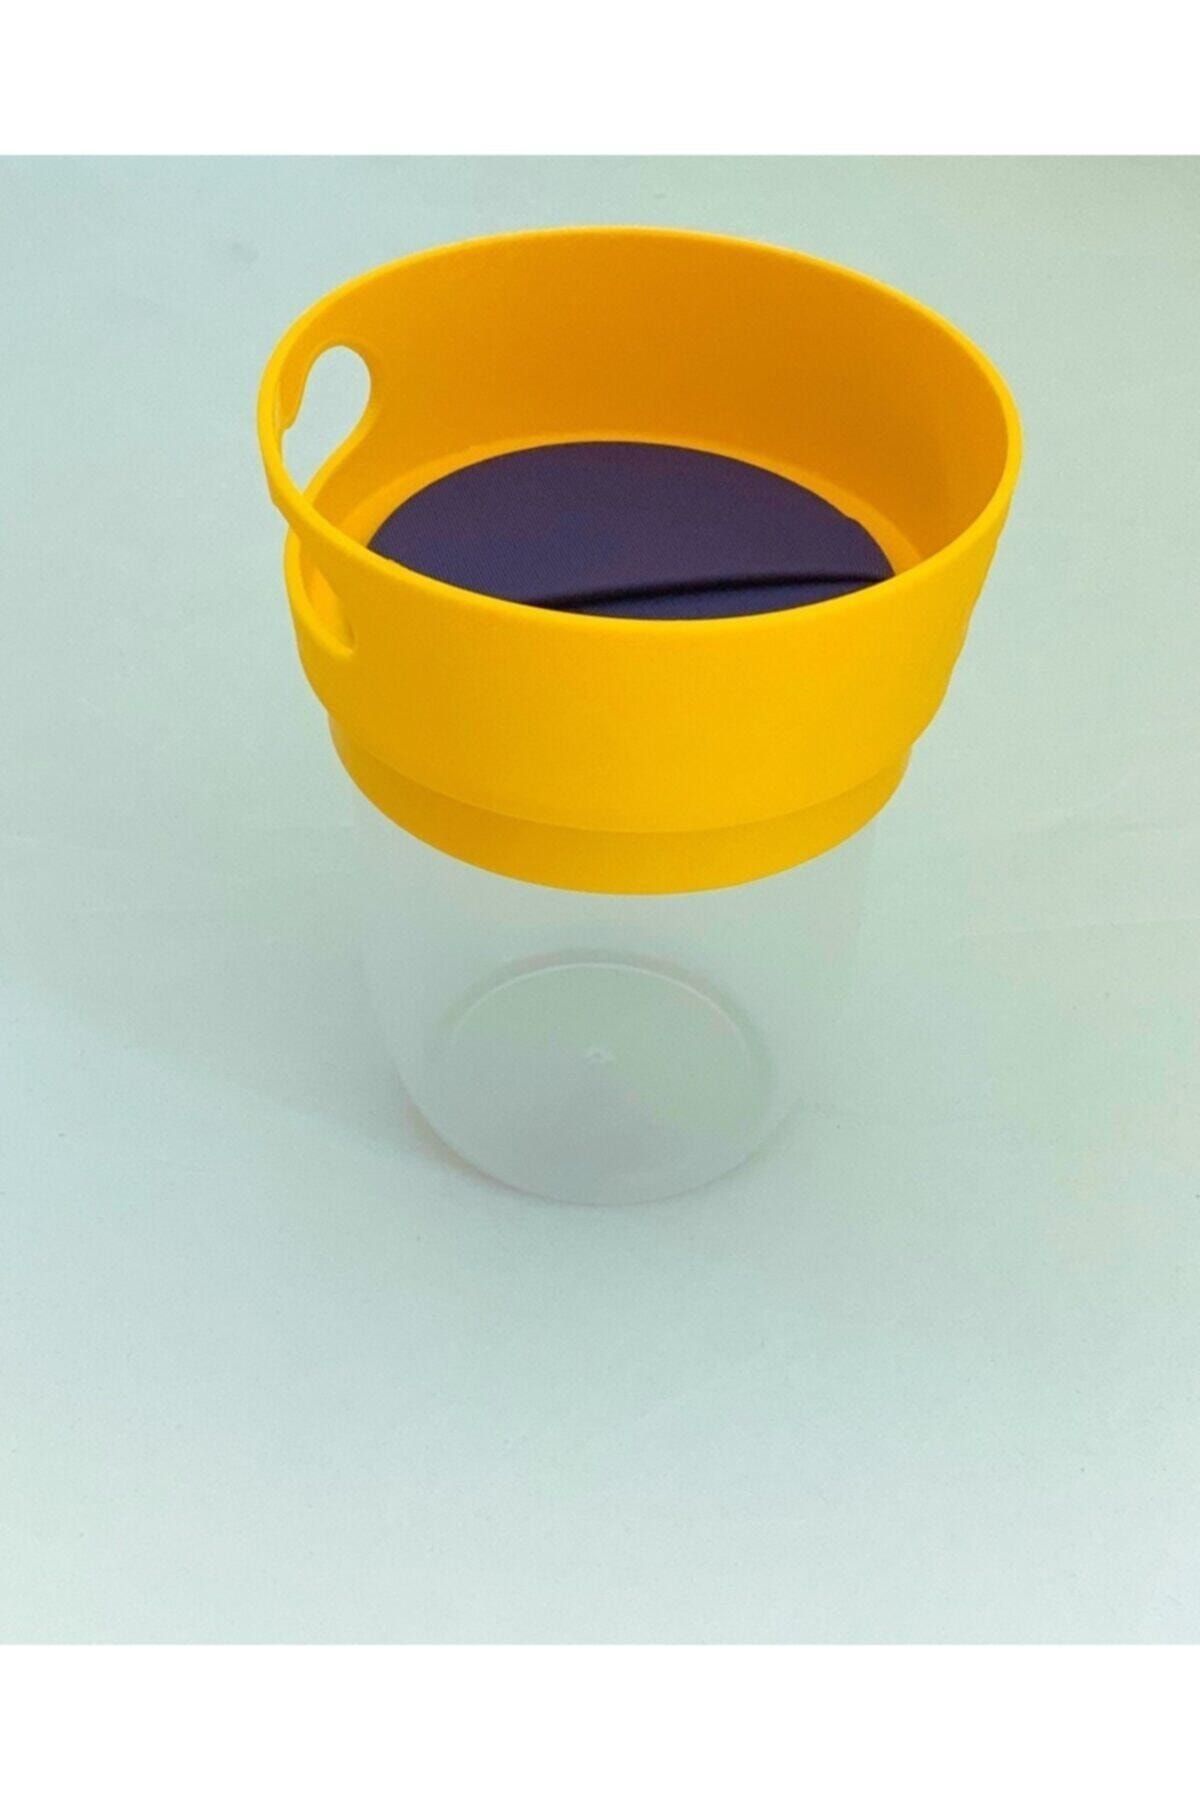 MamaCup Dökülmeyi Önleyen Atıştırmalık Kap / Atıştırma Bardağı Sarı